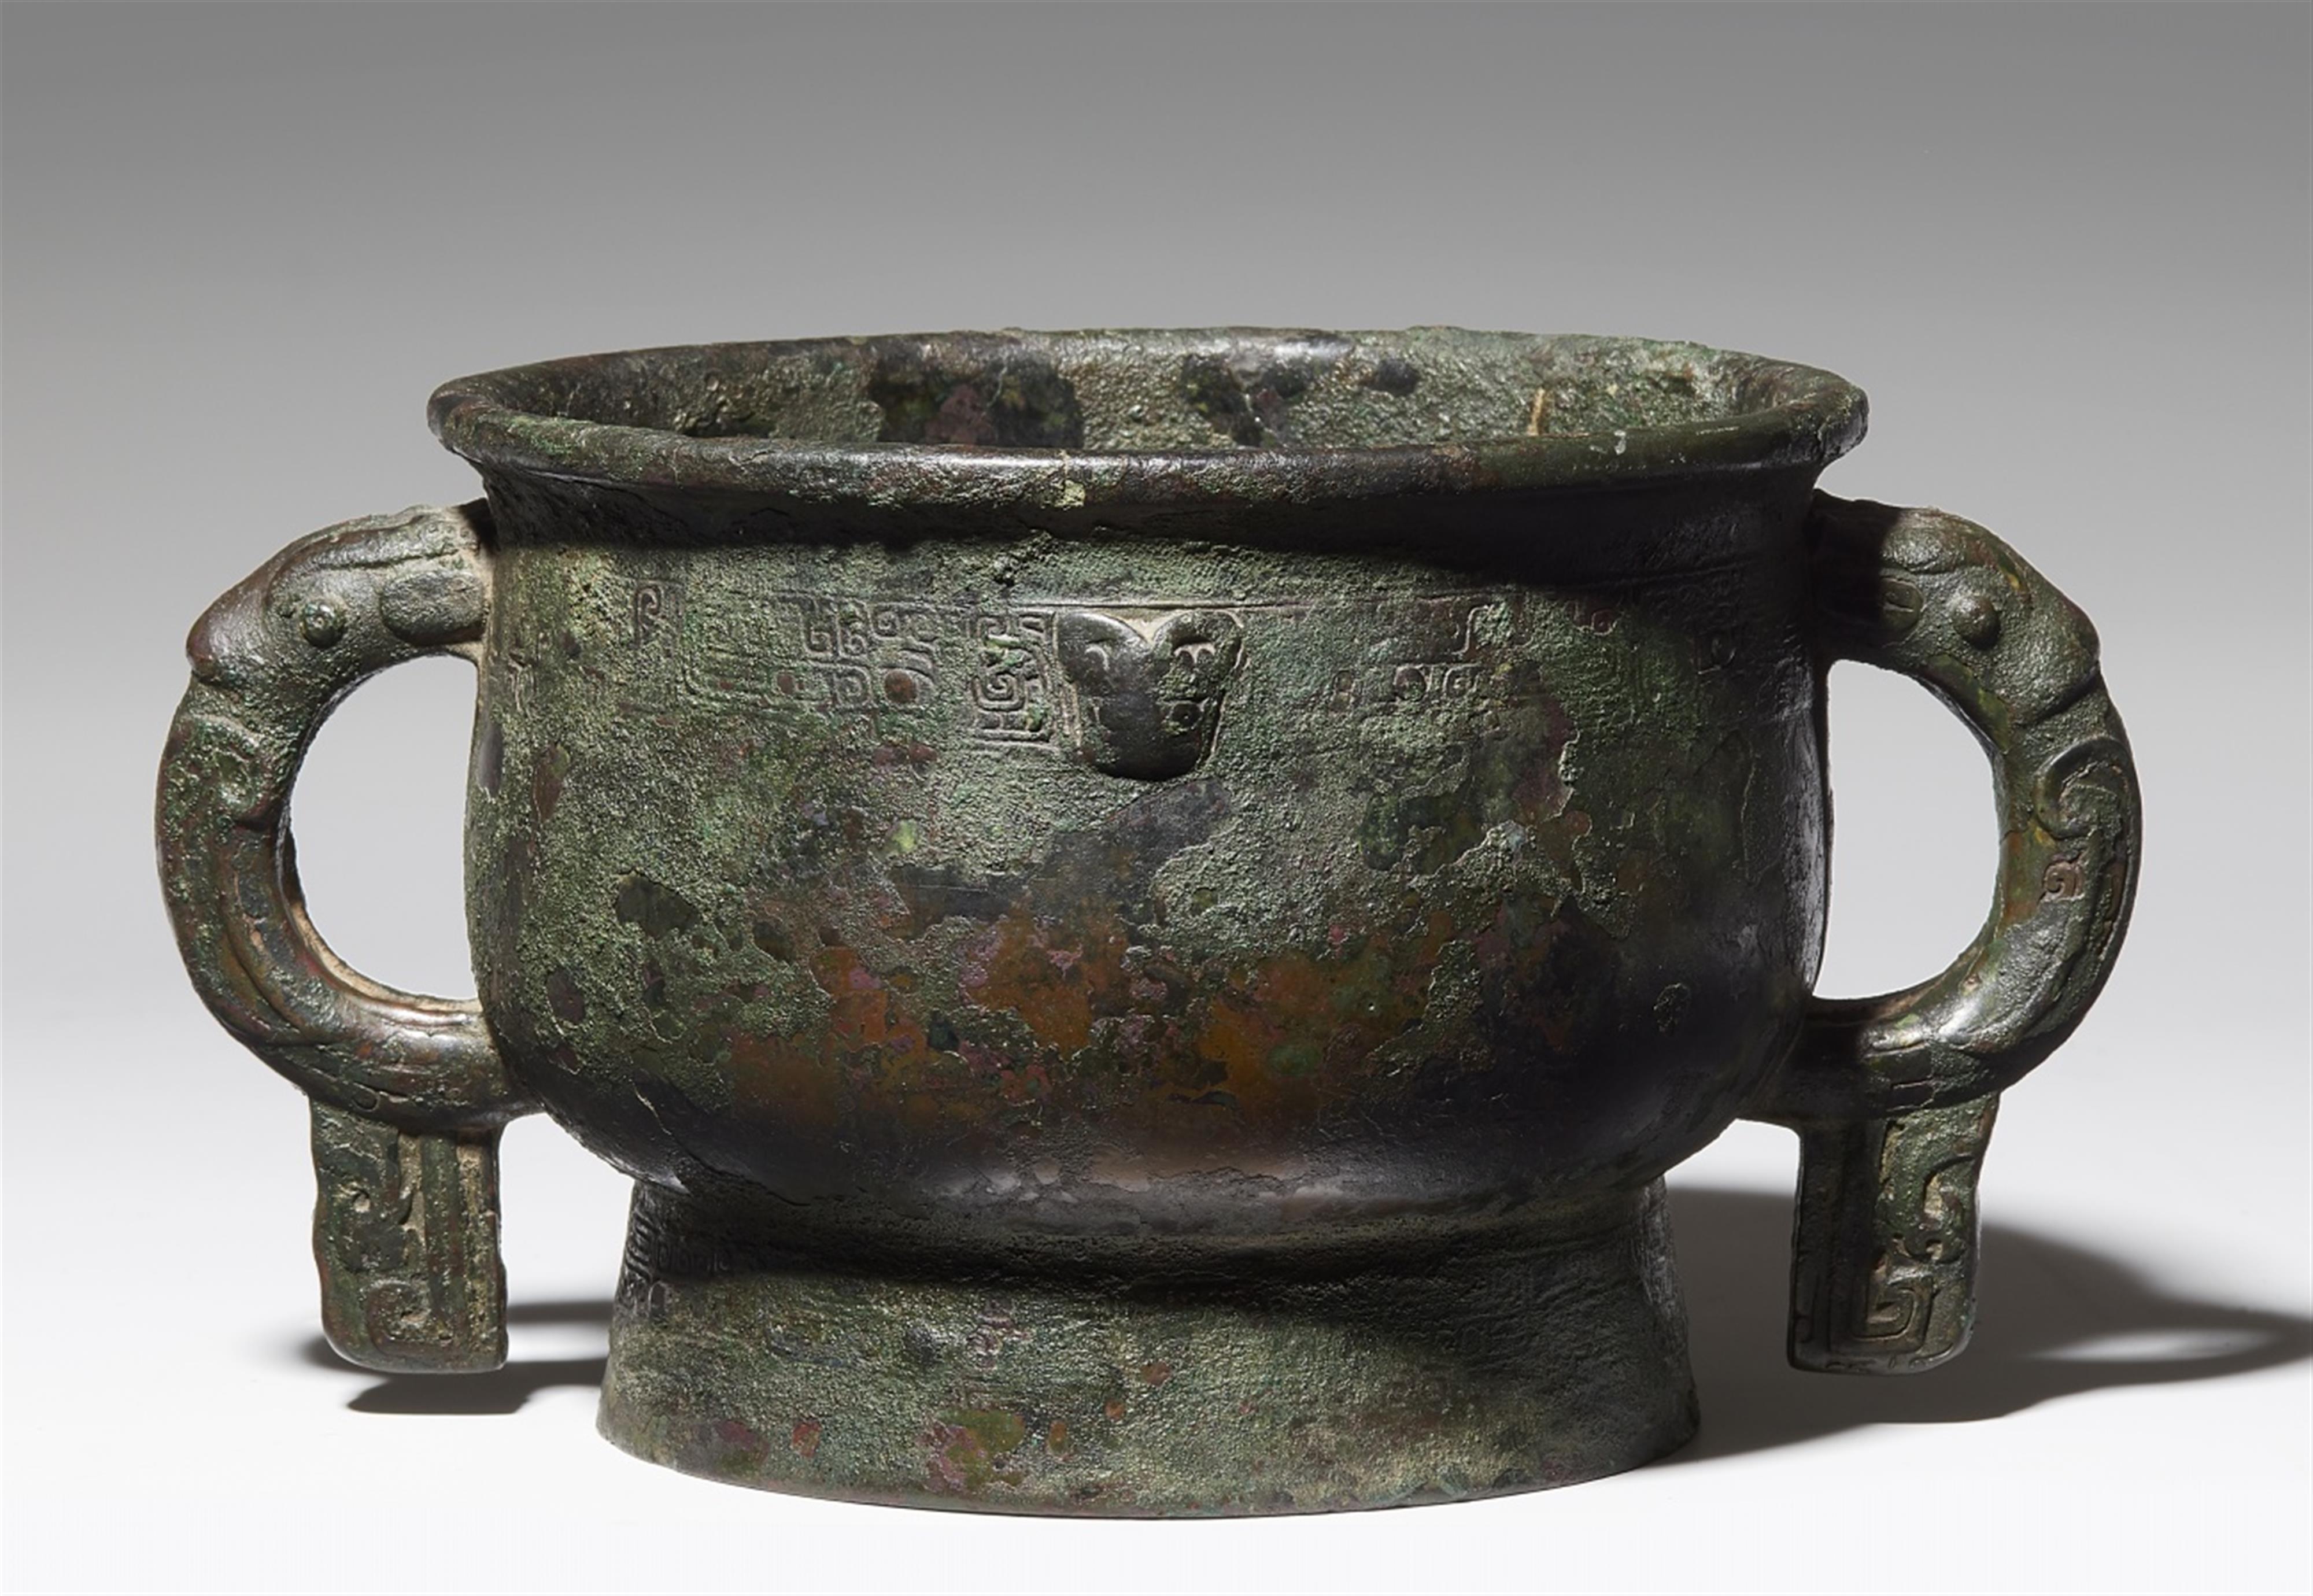 Speisegefäß vom Typ gui. Bronze. Frühe Zhou-Zeit, 12./10. Jh. v. Chr. - image-1